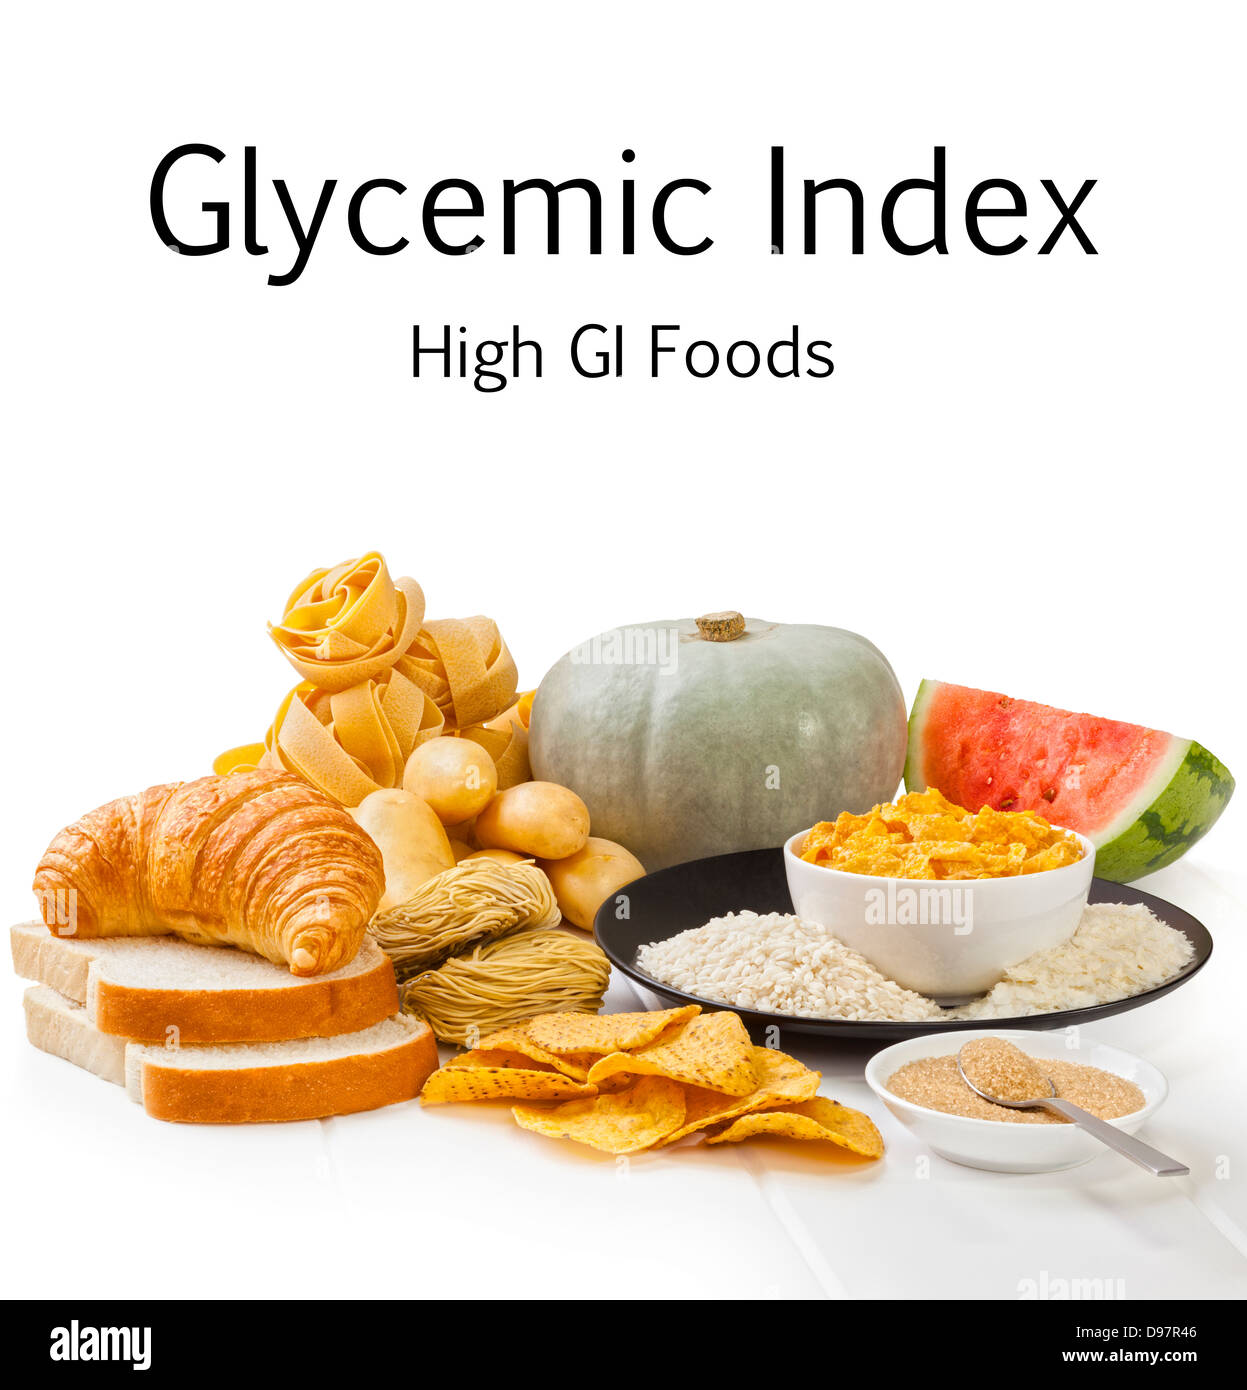 Alto índice glucémico alimentos - carbohidratos que tienen un alto índice glucémico, sobre un fondo blanco. Foco de delante hacia atrás. Foto de stock